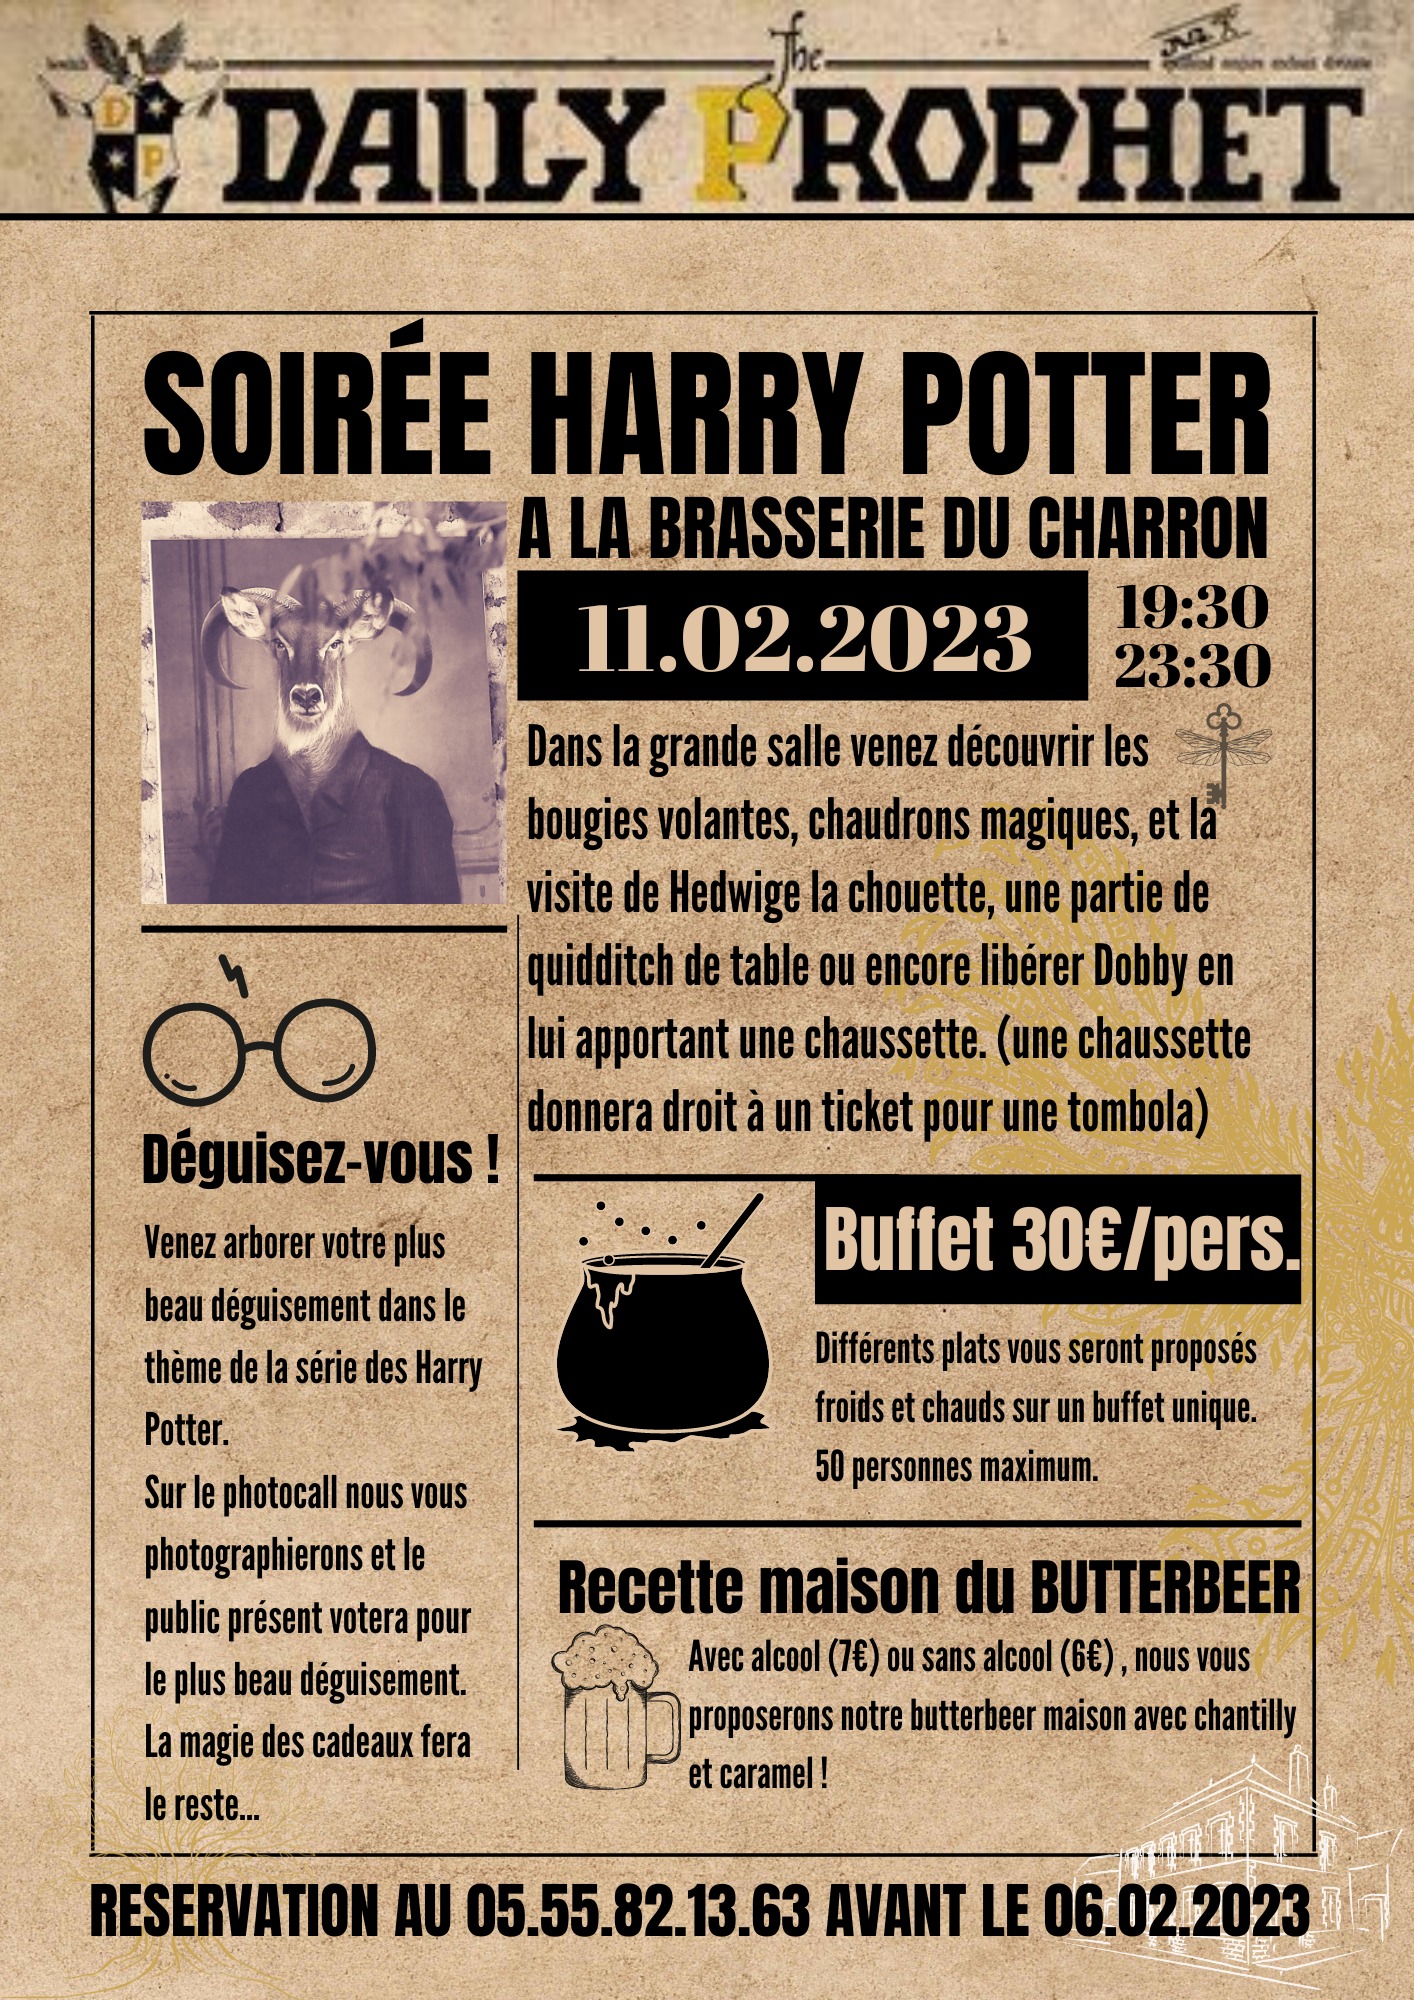 Soirée Harry Potter